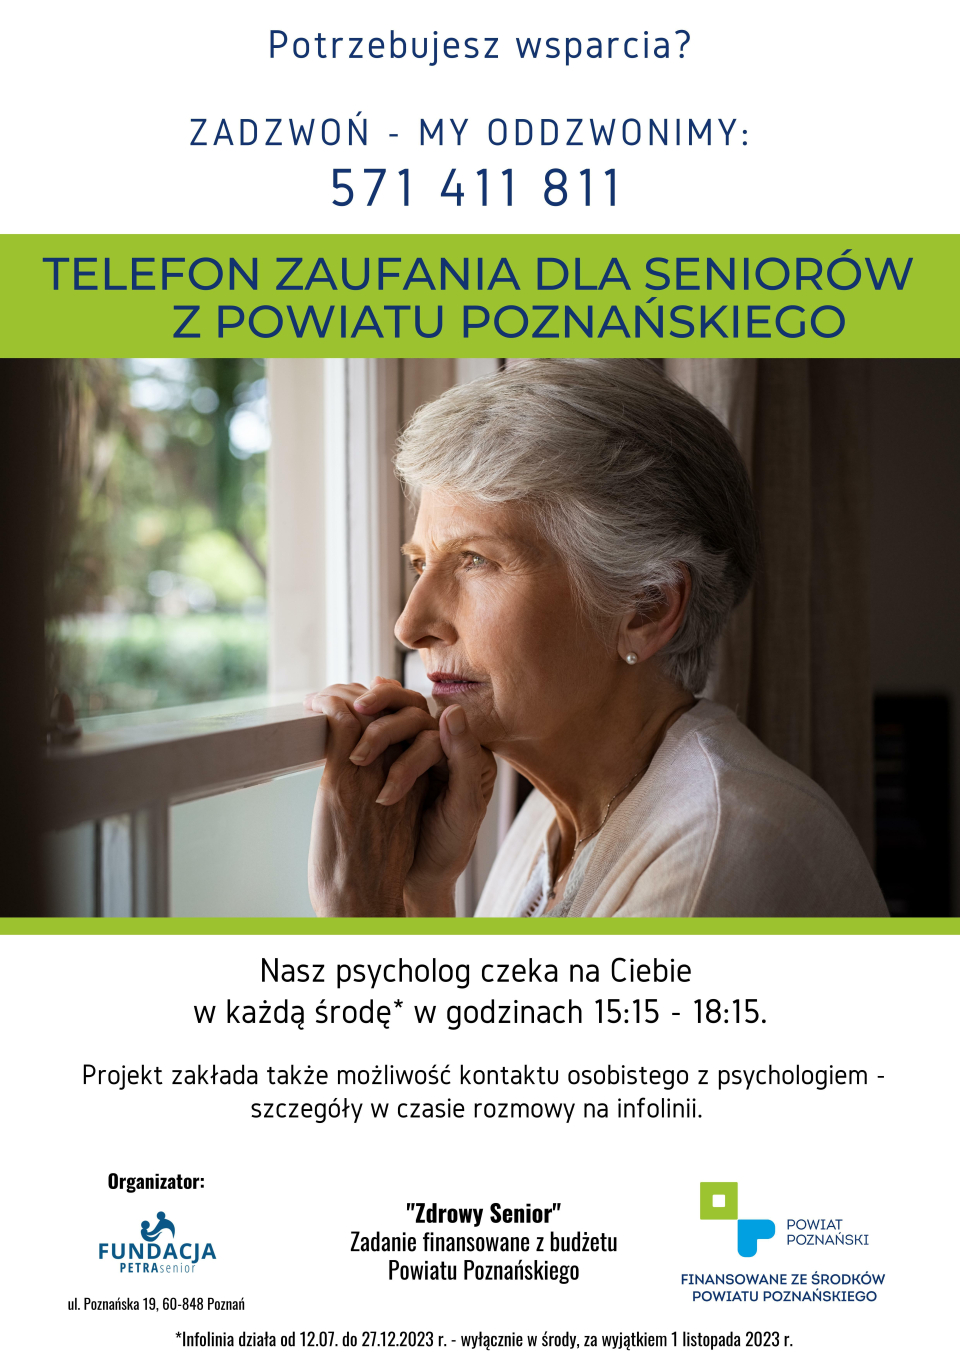 Od najbliższej środy mieszkańcy powiatu poznańskiego w wieku +60 będą mogli skorzystać ze wsparcia psychologicznego...